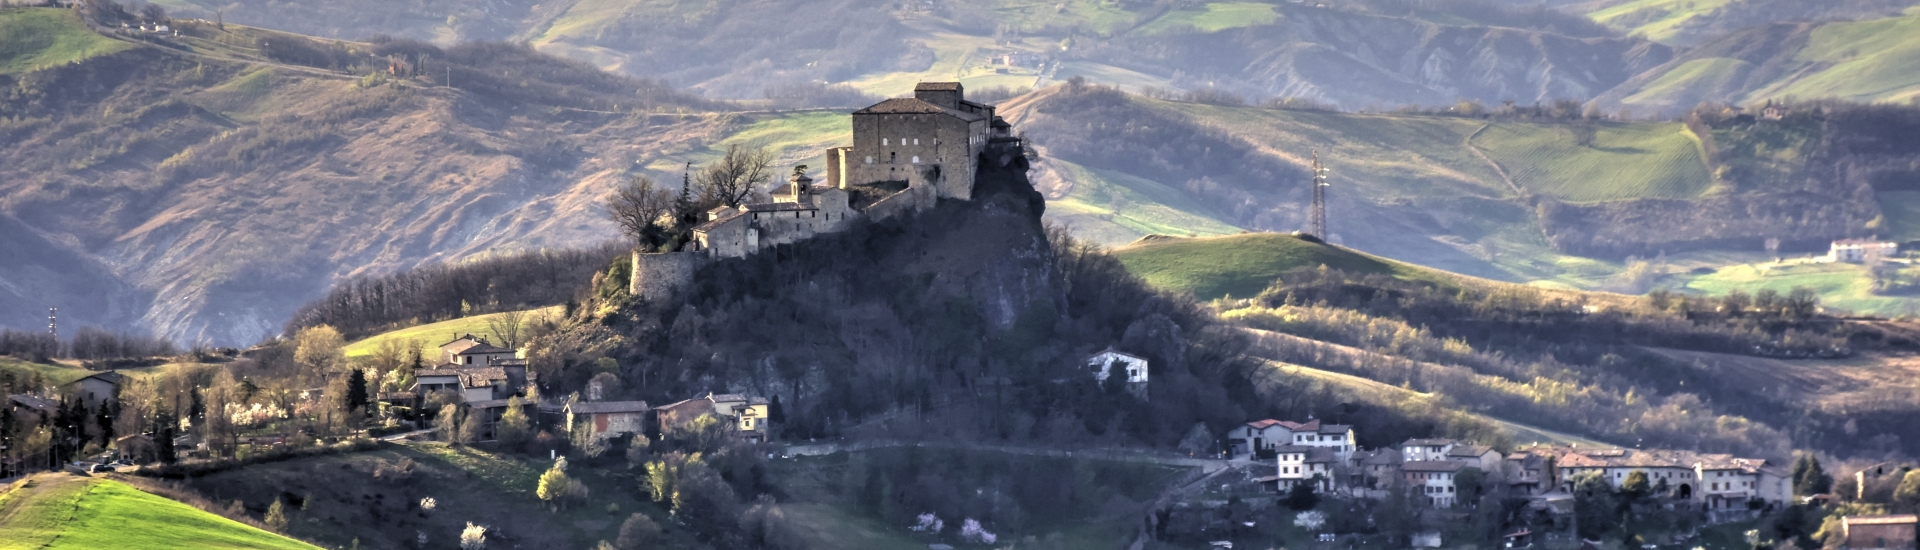 Castello di Rossena -  foto di: |Emanuela Rabotti| - Associazione Culturale Matilde di Canossa